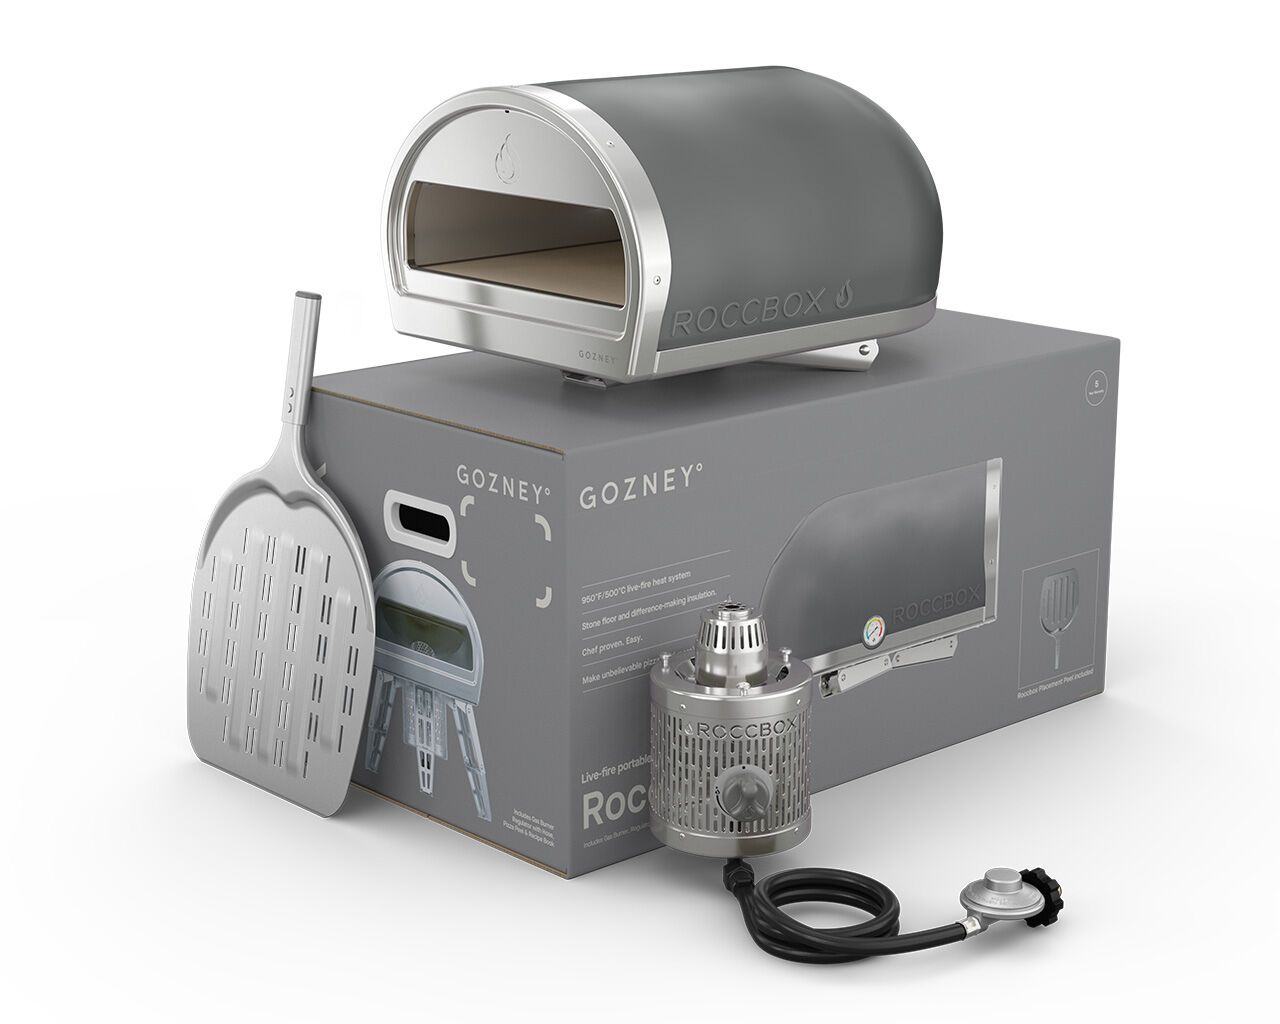 Gozney Roccbox Portable Pizza Oven - Grey, Grey, hi-res